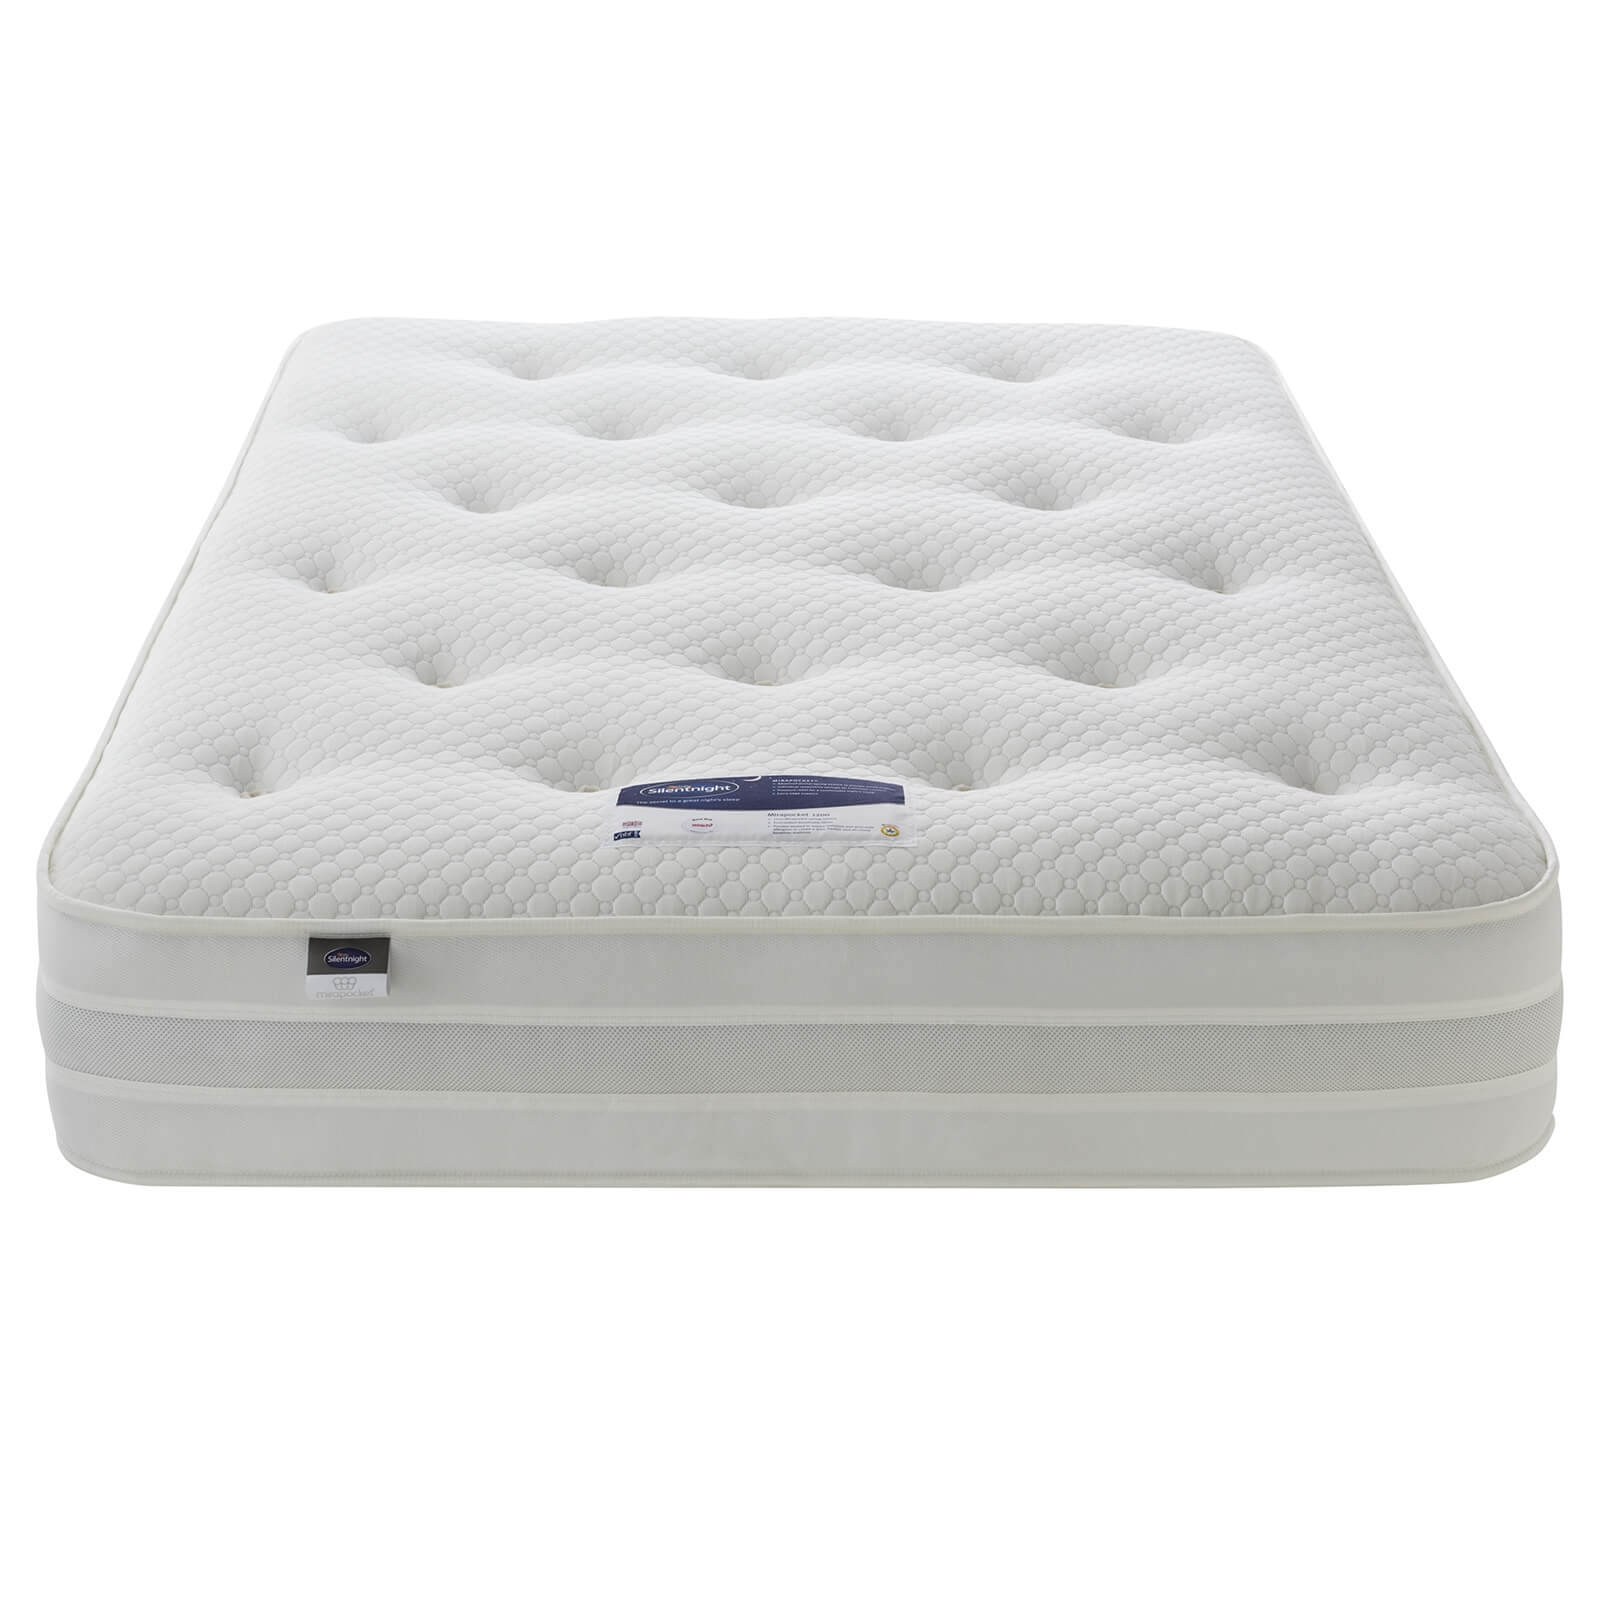 Silentnight Eco Comfort 1200 Pocket Divan Bed 4 Drawer - Sandstone - Double